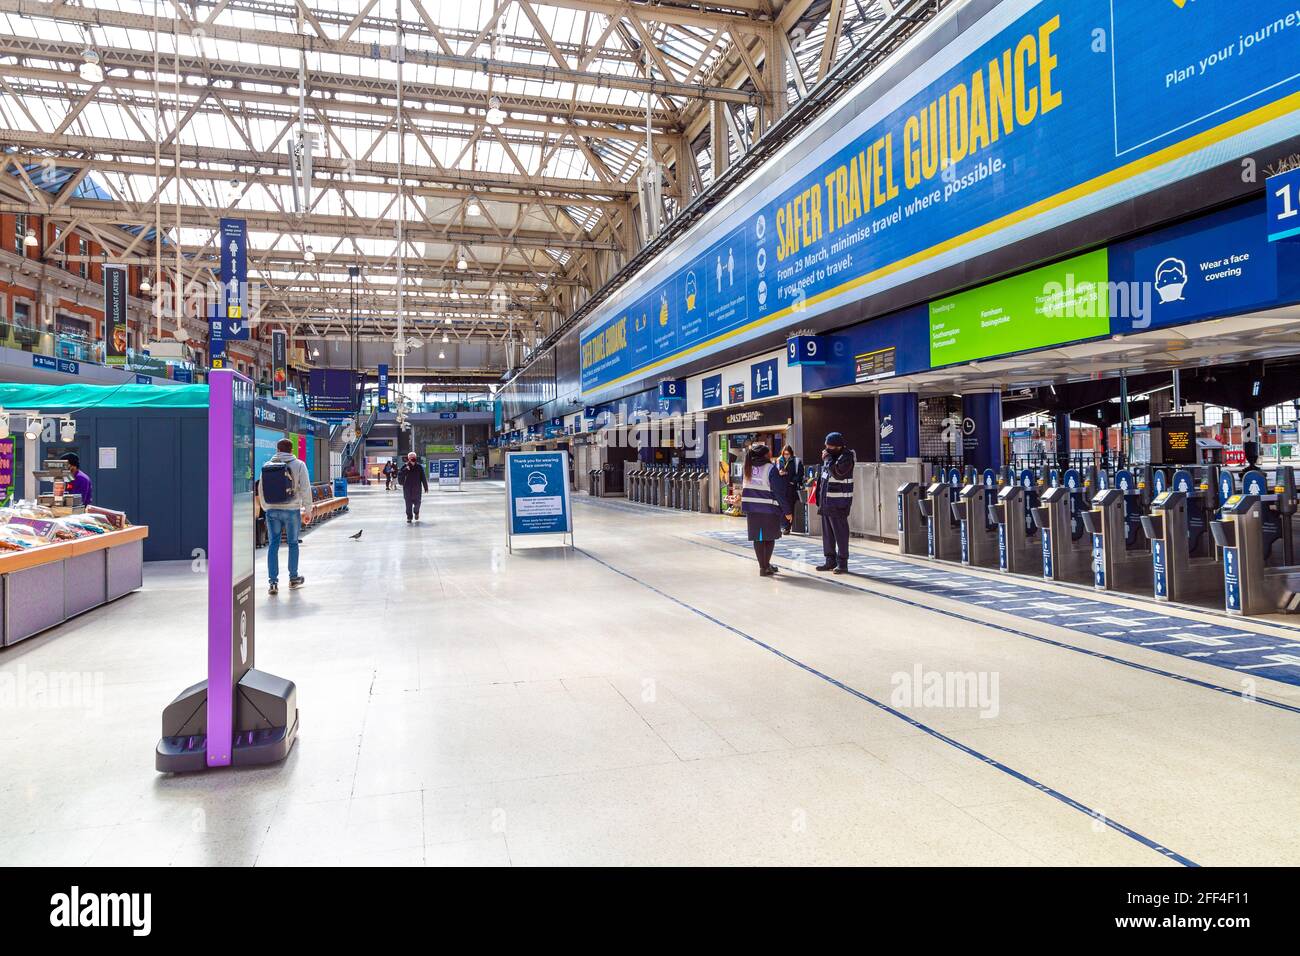 18 avril 2021 - Londres, Royaume-Uni, vide Waterloo Station concourse pendant les premières étapes de l'assouplissement du confinement en cas de pandémie du coronavirus Banque D'Images